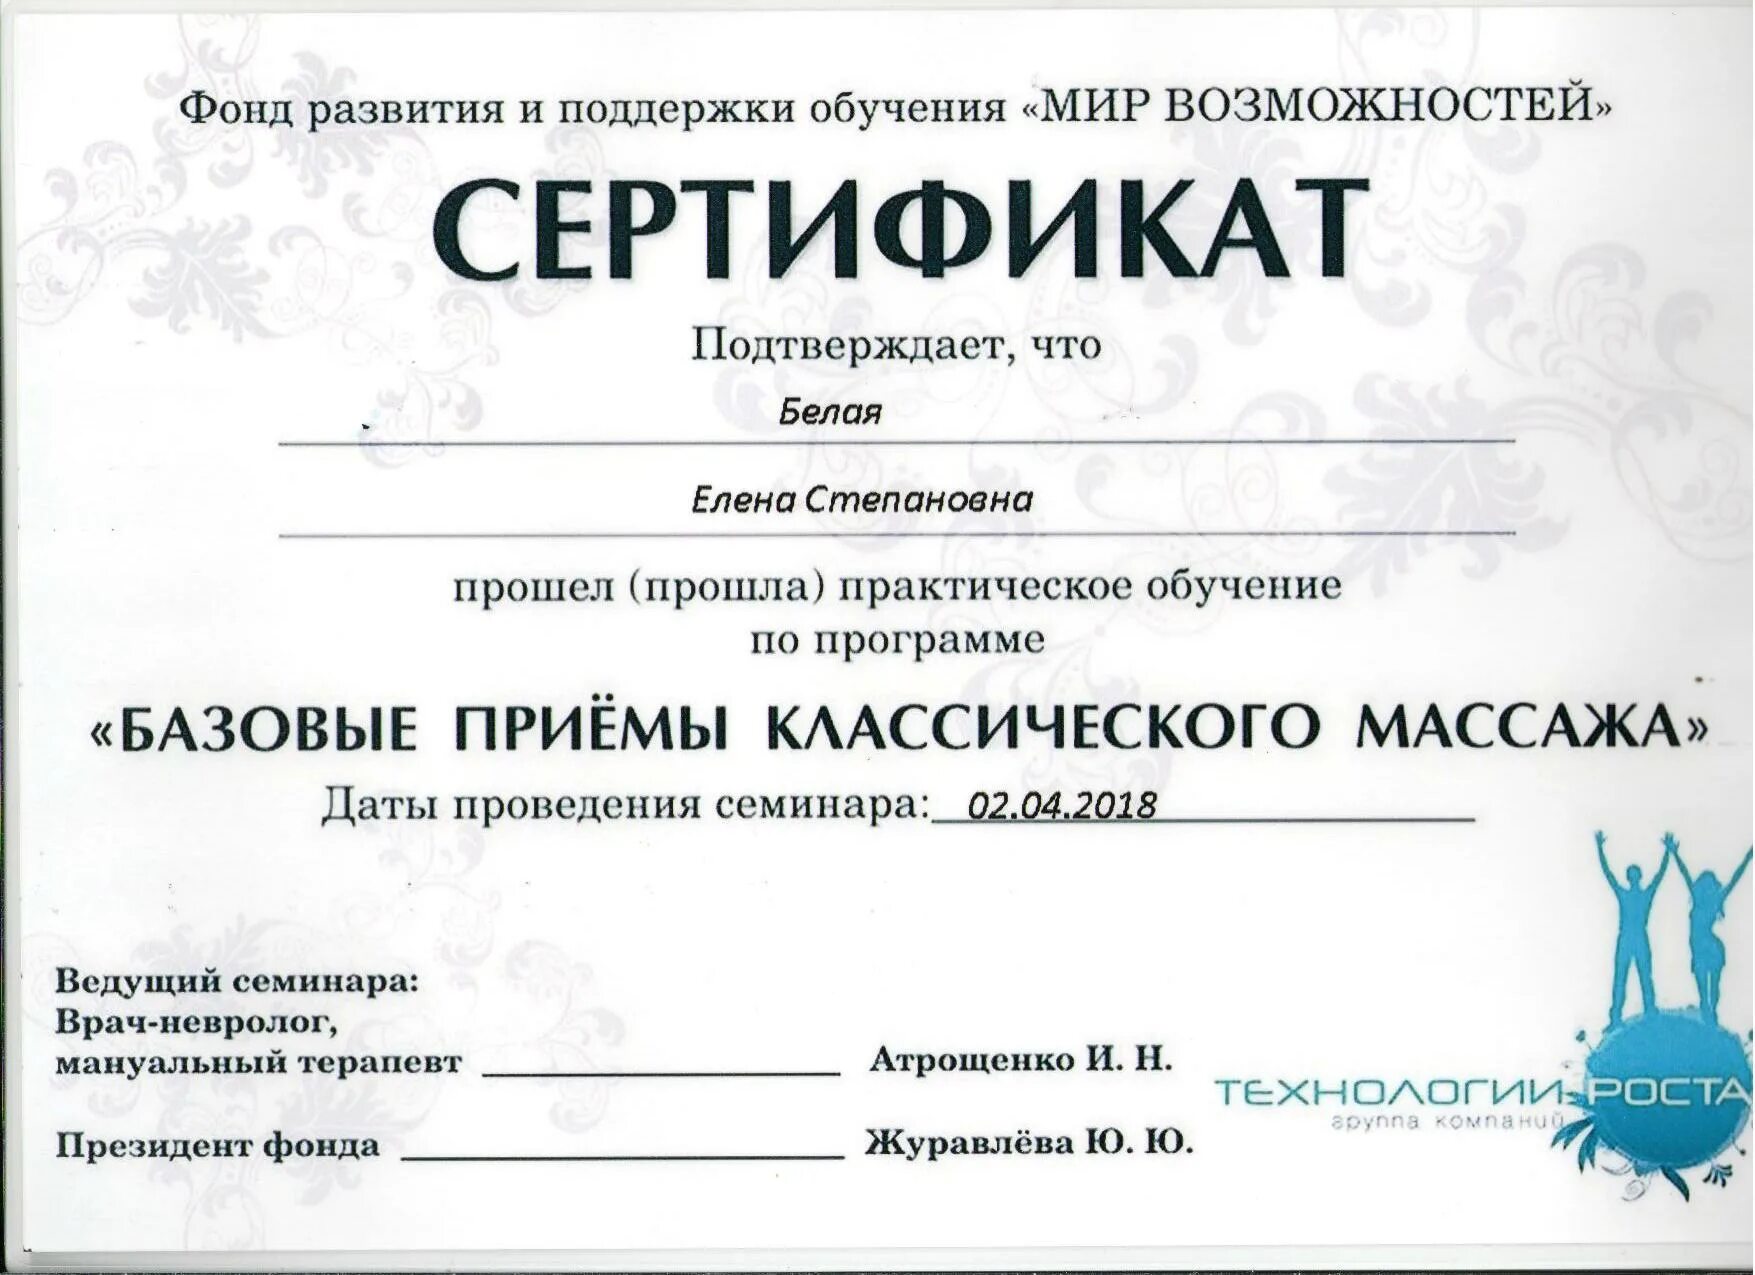 Сертификат массажиста. Сертификат о прохождении курсов массажа. Сертификат классический массаж. Документы массажиста